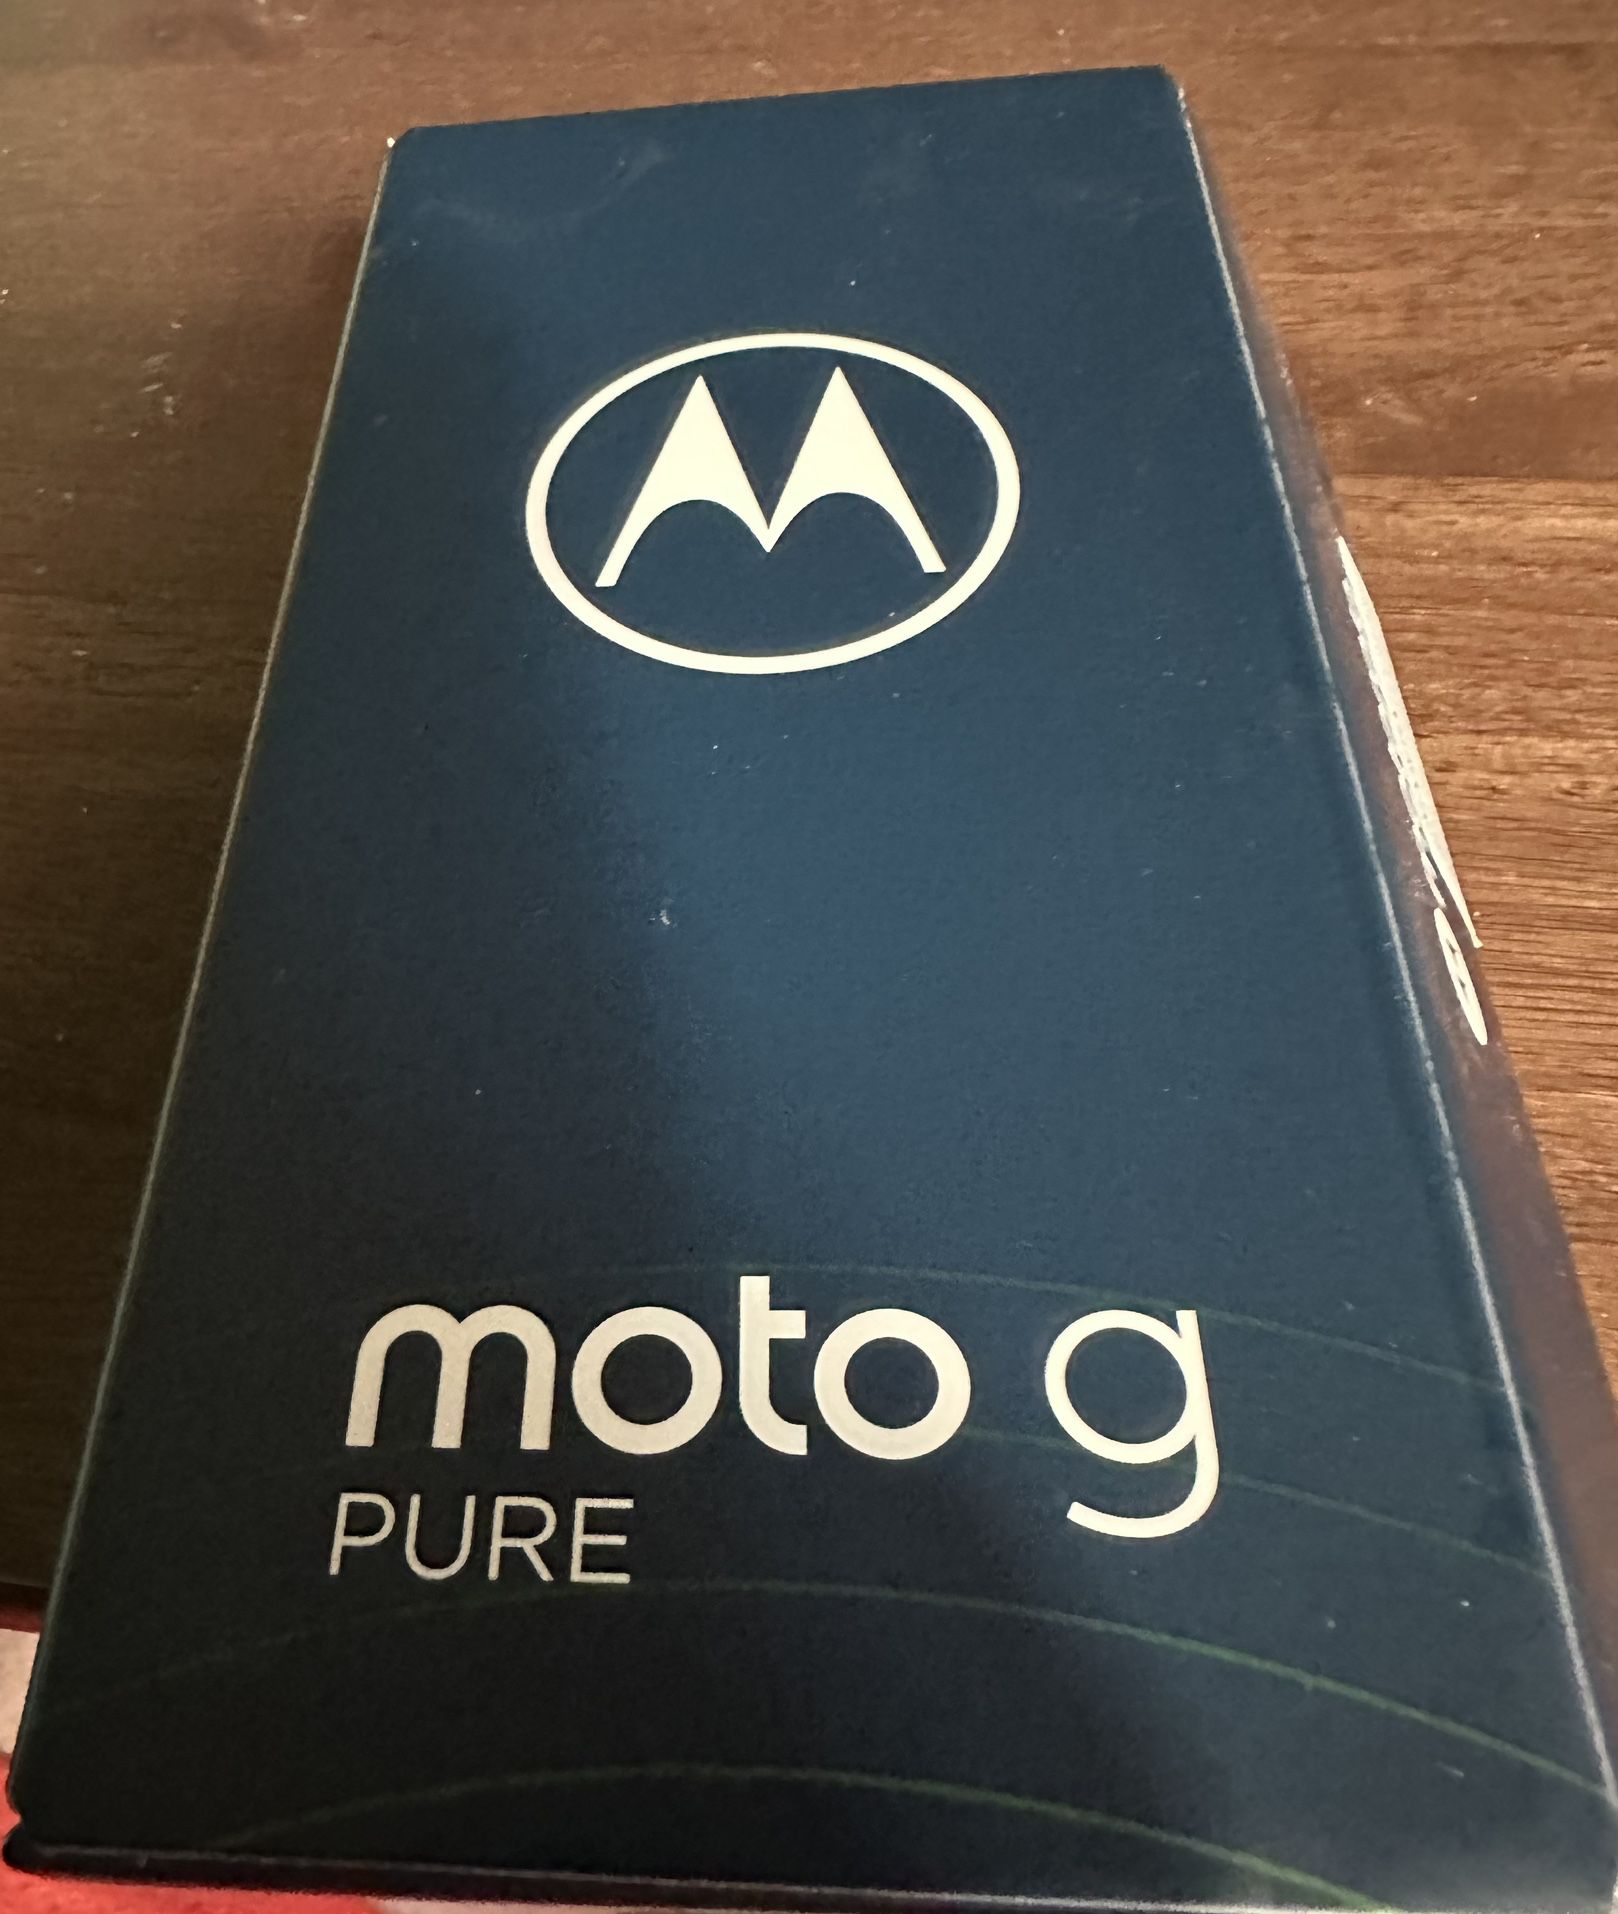 MOTOROLA- MOTO G PURE PHONE 